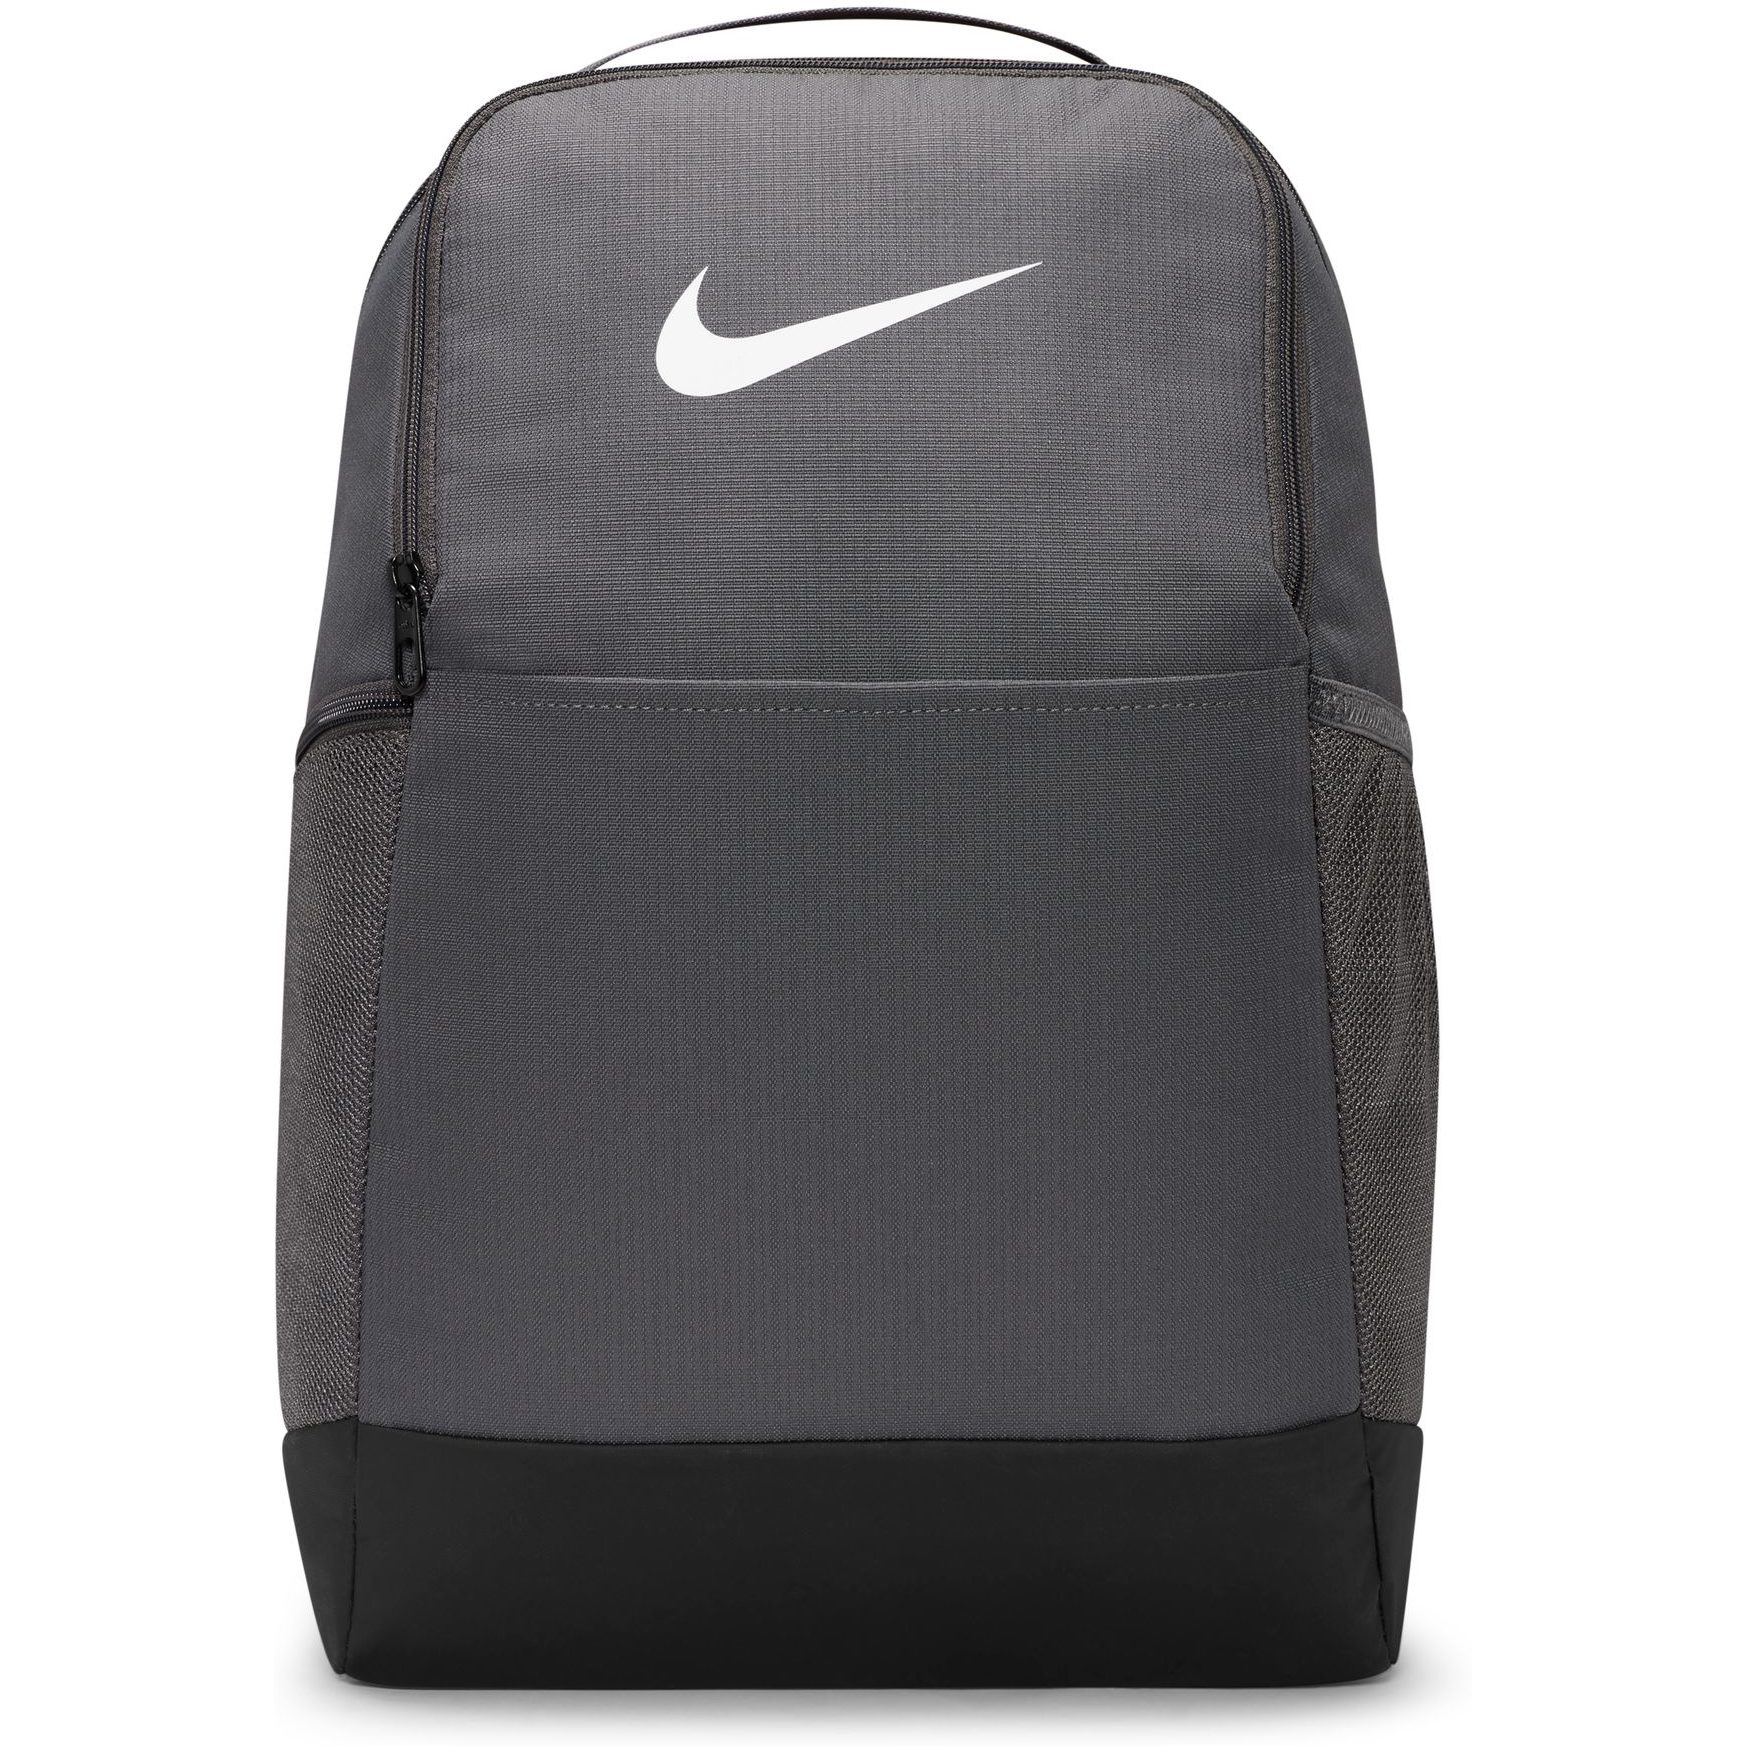 Image of Nike Brasilia 9.5 Training Backpack 24L - Medium - iron grey/black/white DH7709-068